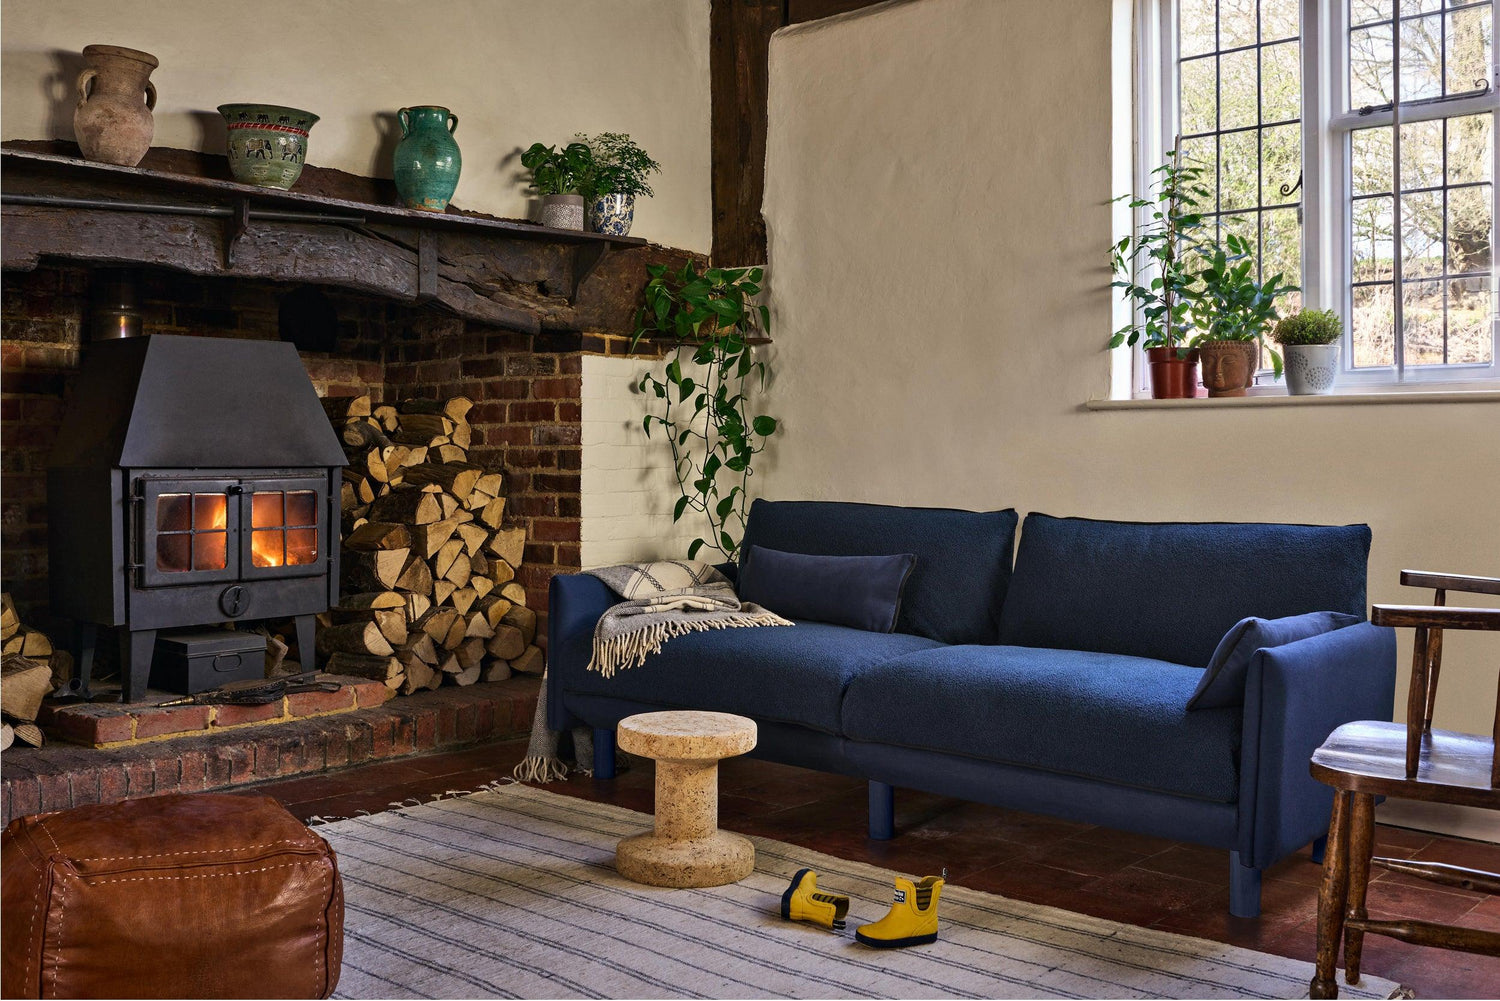 Blue 3 seater cozmo sofa in a warm interior